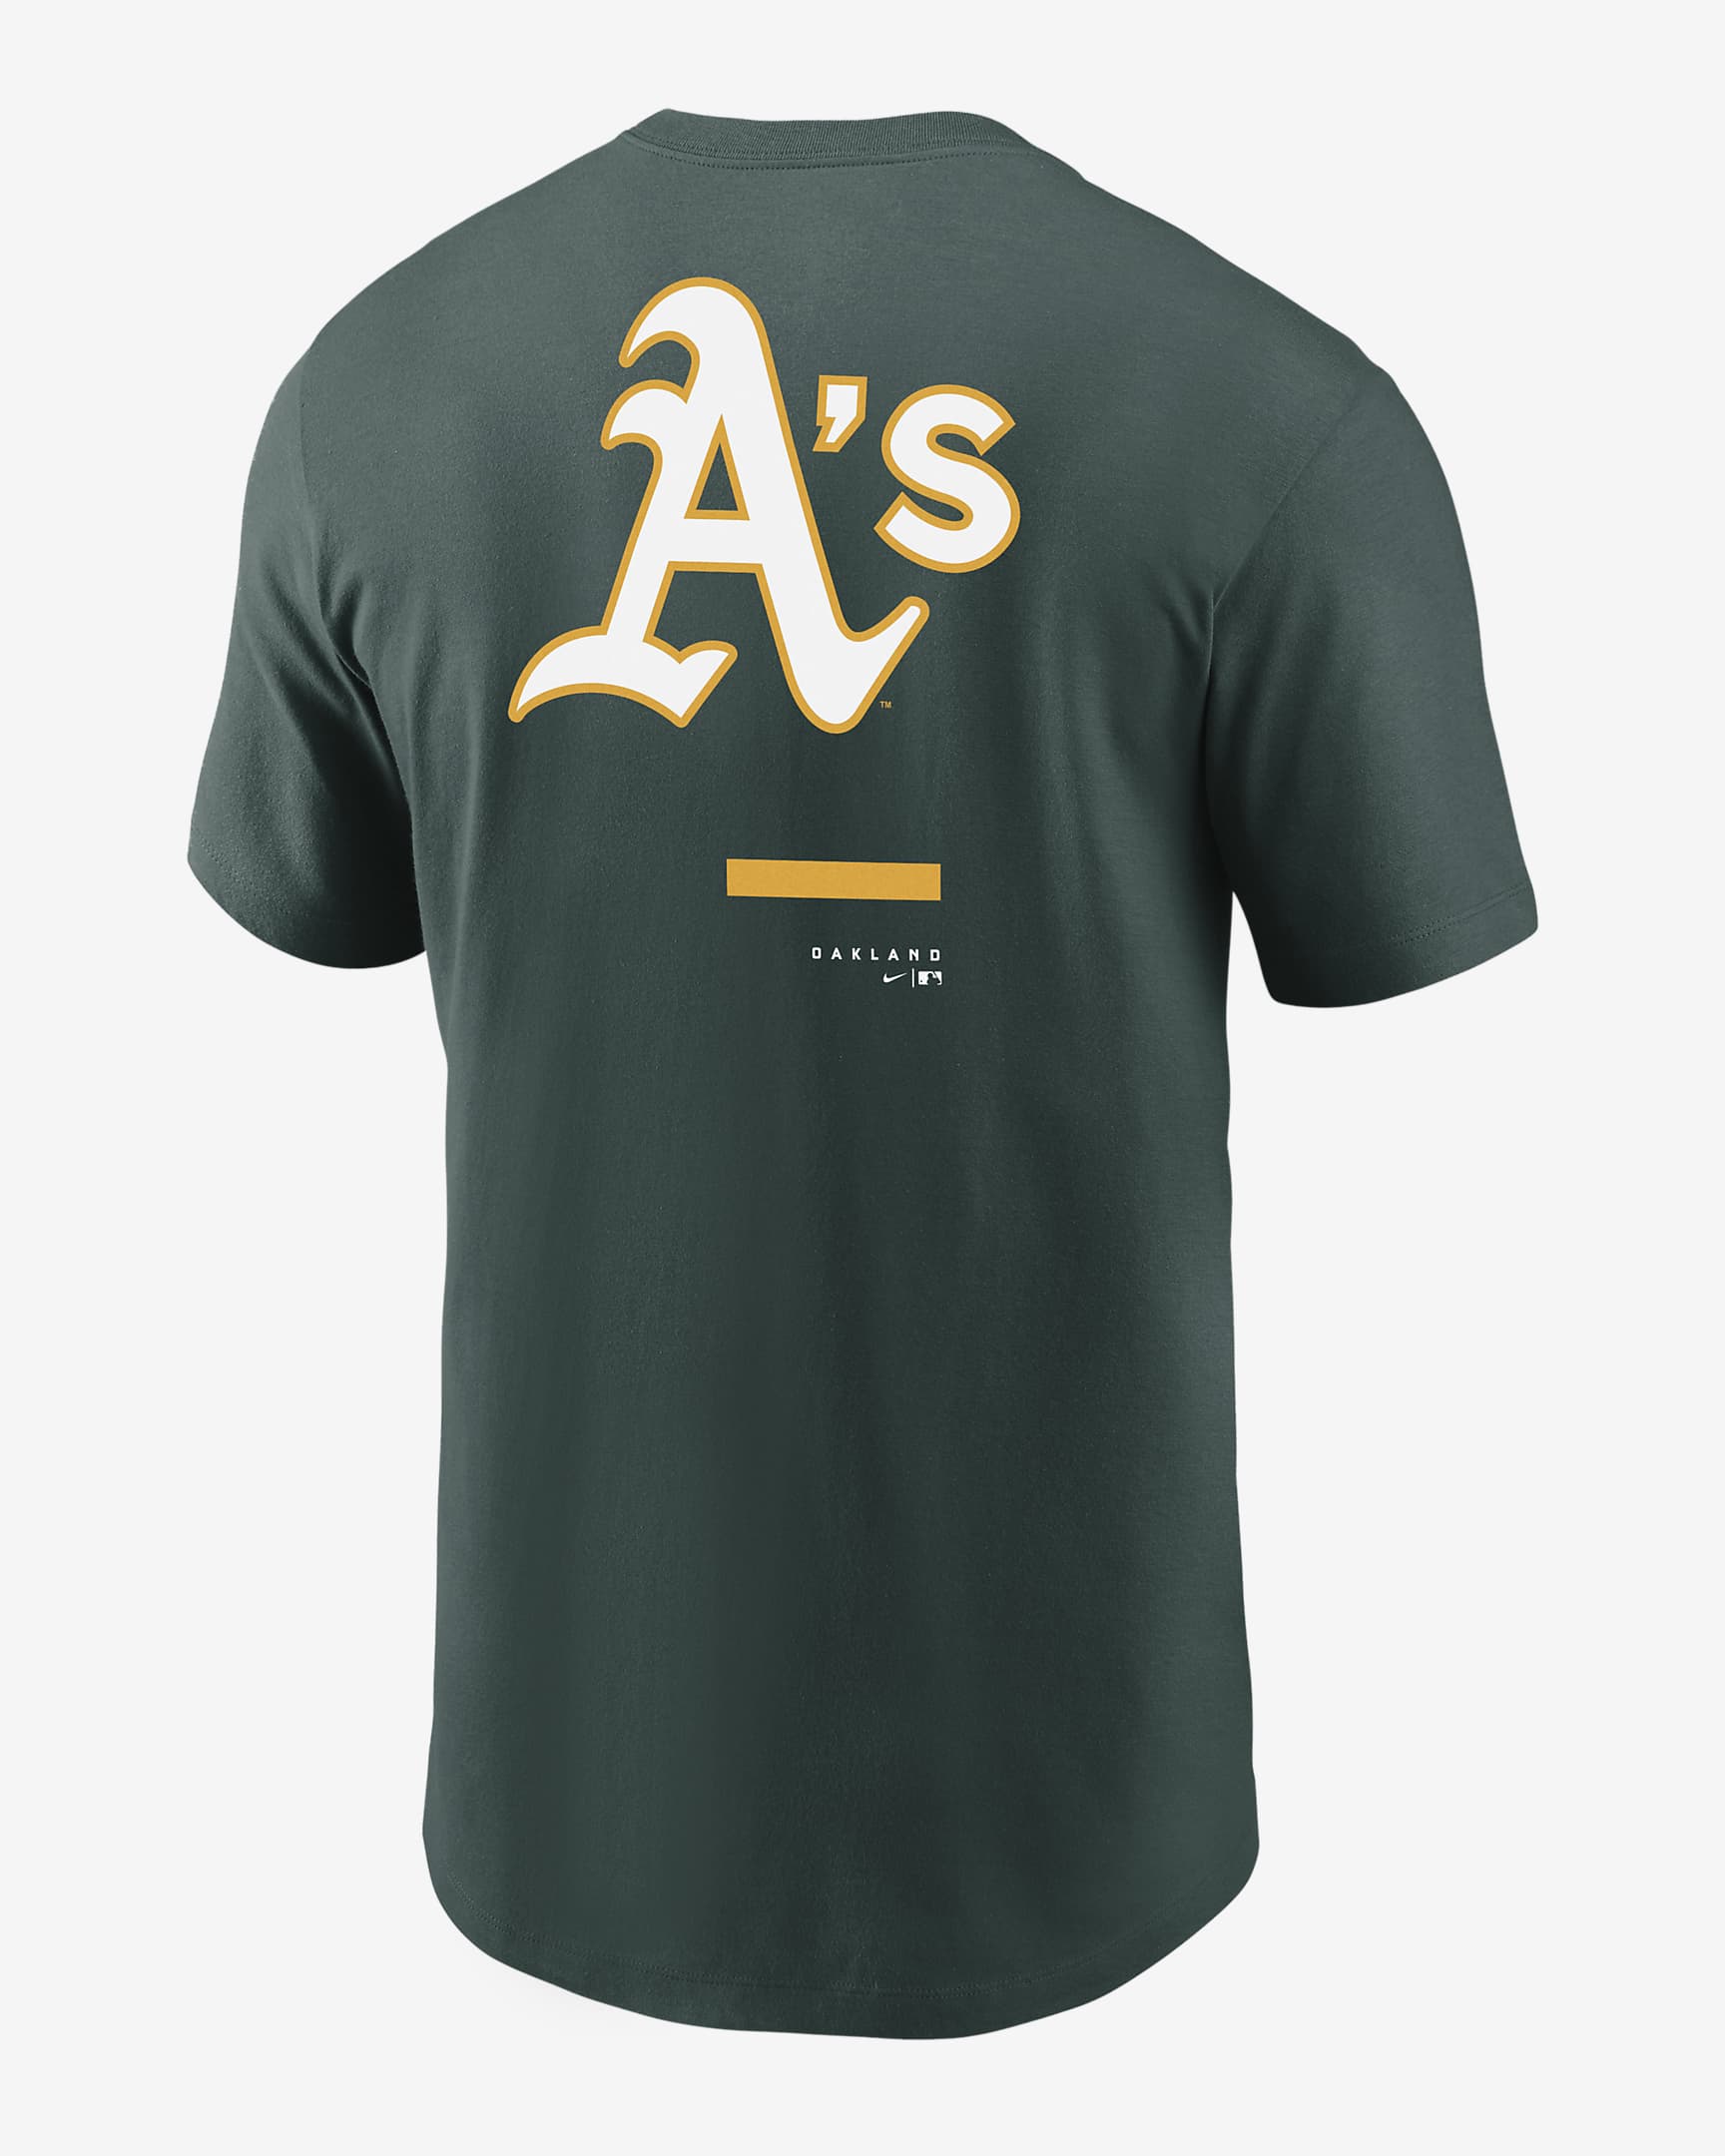 Nike Over Shoulder (MLB Oakland Athletics) Men's T-Shirt. Nike.com